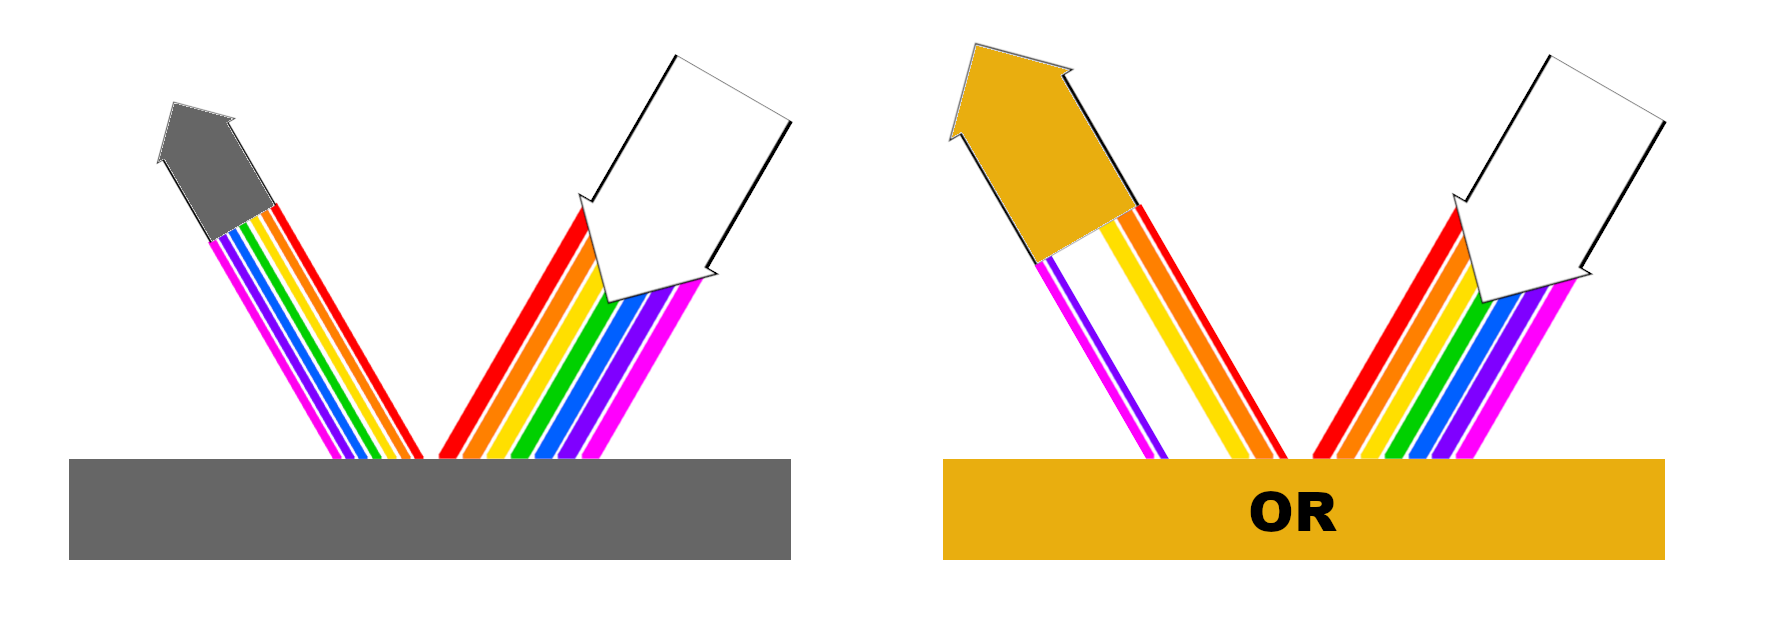 schéma de la défragmentation de la lumière sur l'or pour donner sa couleur